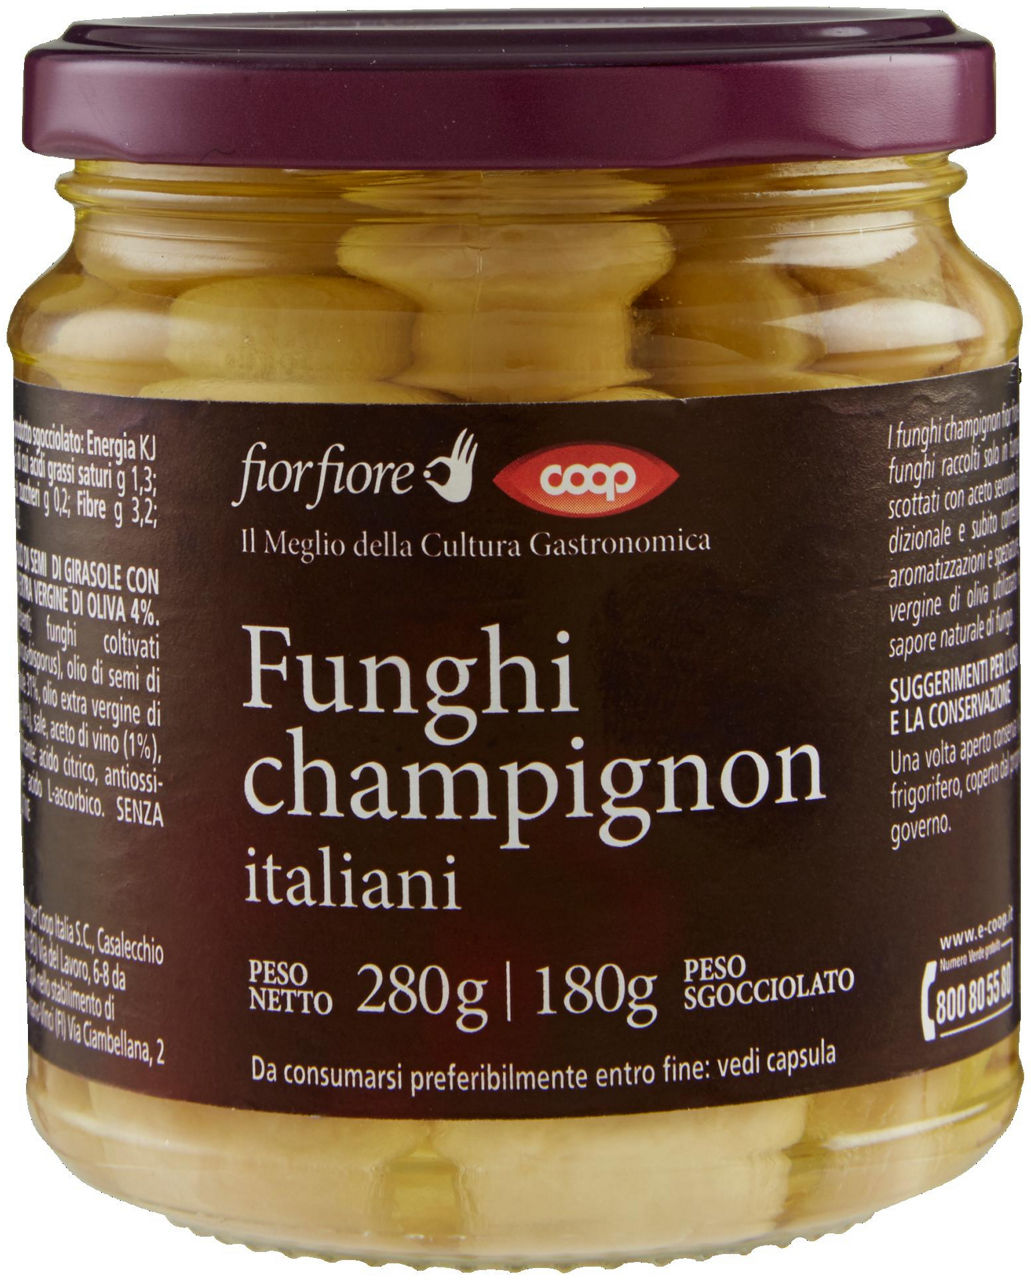 Funghi champignon italiani fior fiore coop vv gr 280